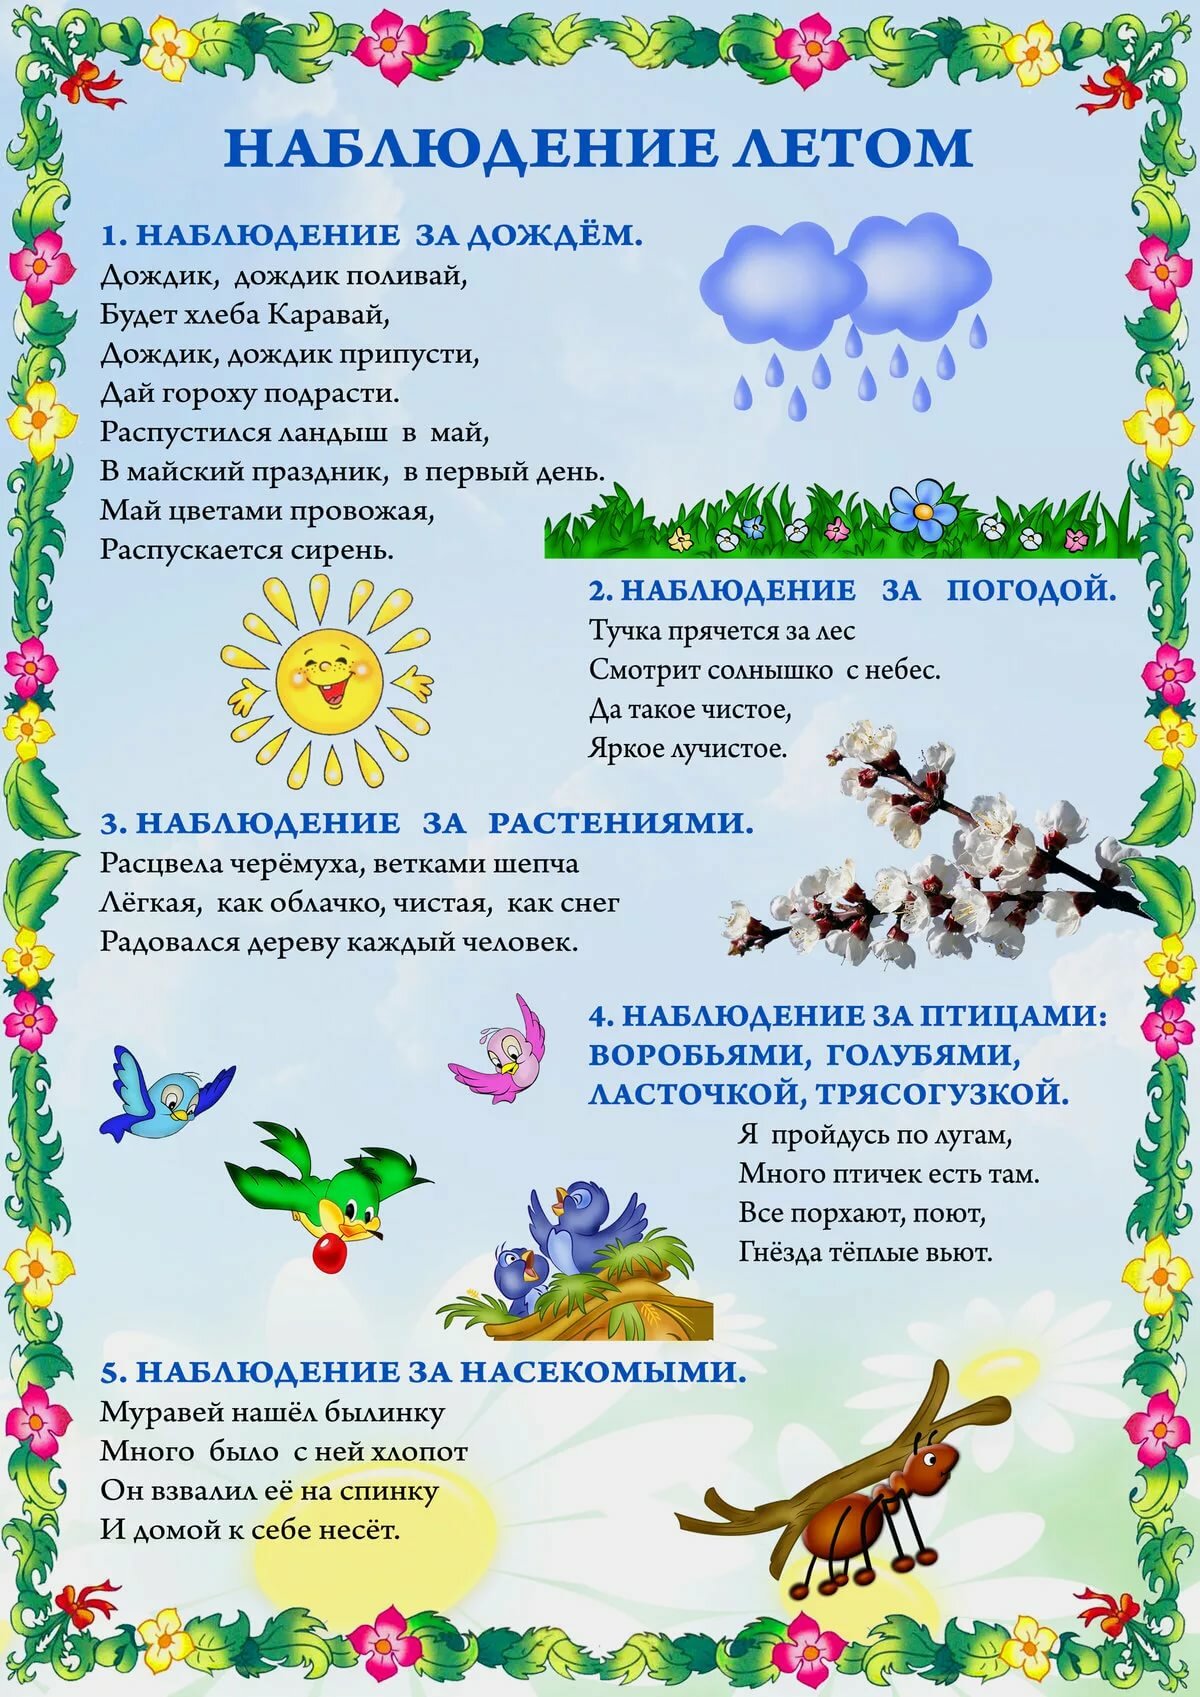 МДОУ Комсомольский детский сад "Ромашка" - Безопасность в ле